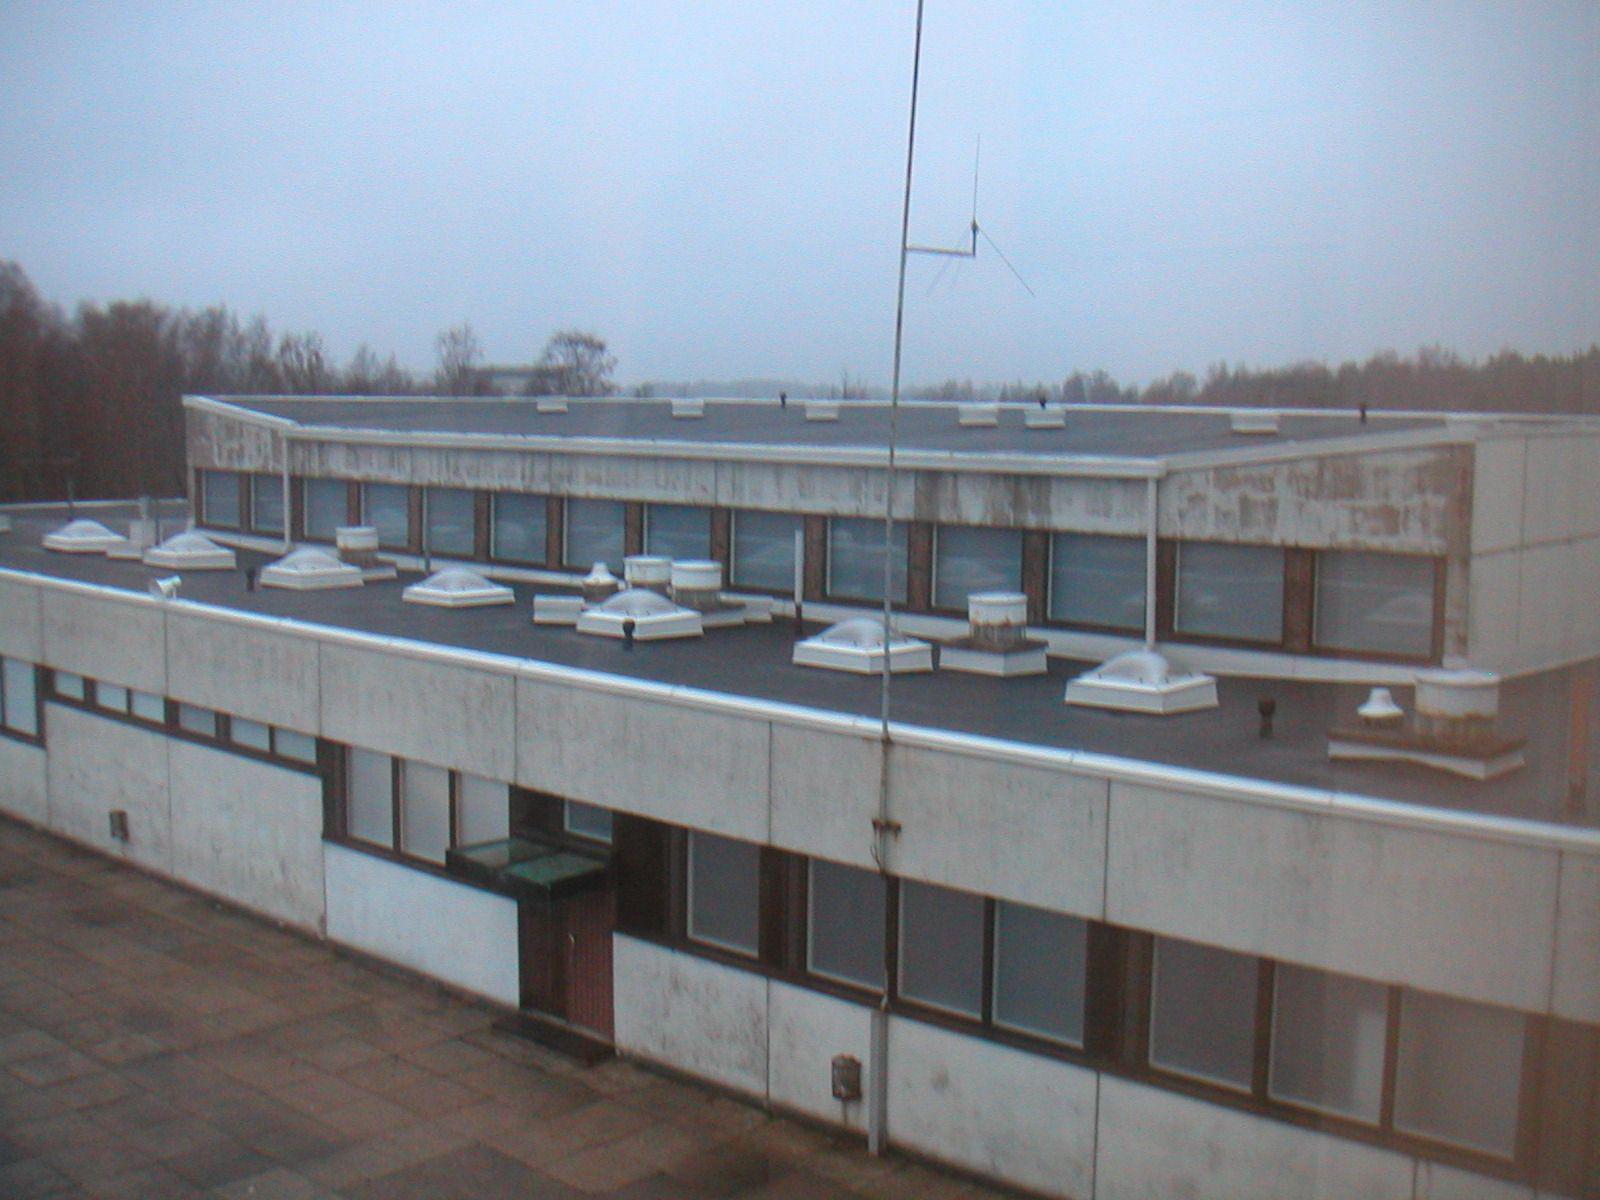 Rieskalähteen koulu, 1963, ulkokuva katolta. Rakennuksessa on loiva katto sisäpuolisella vedenpoistolla ja lukuisia kattoikkunoita.